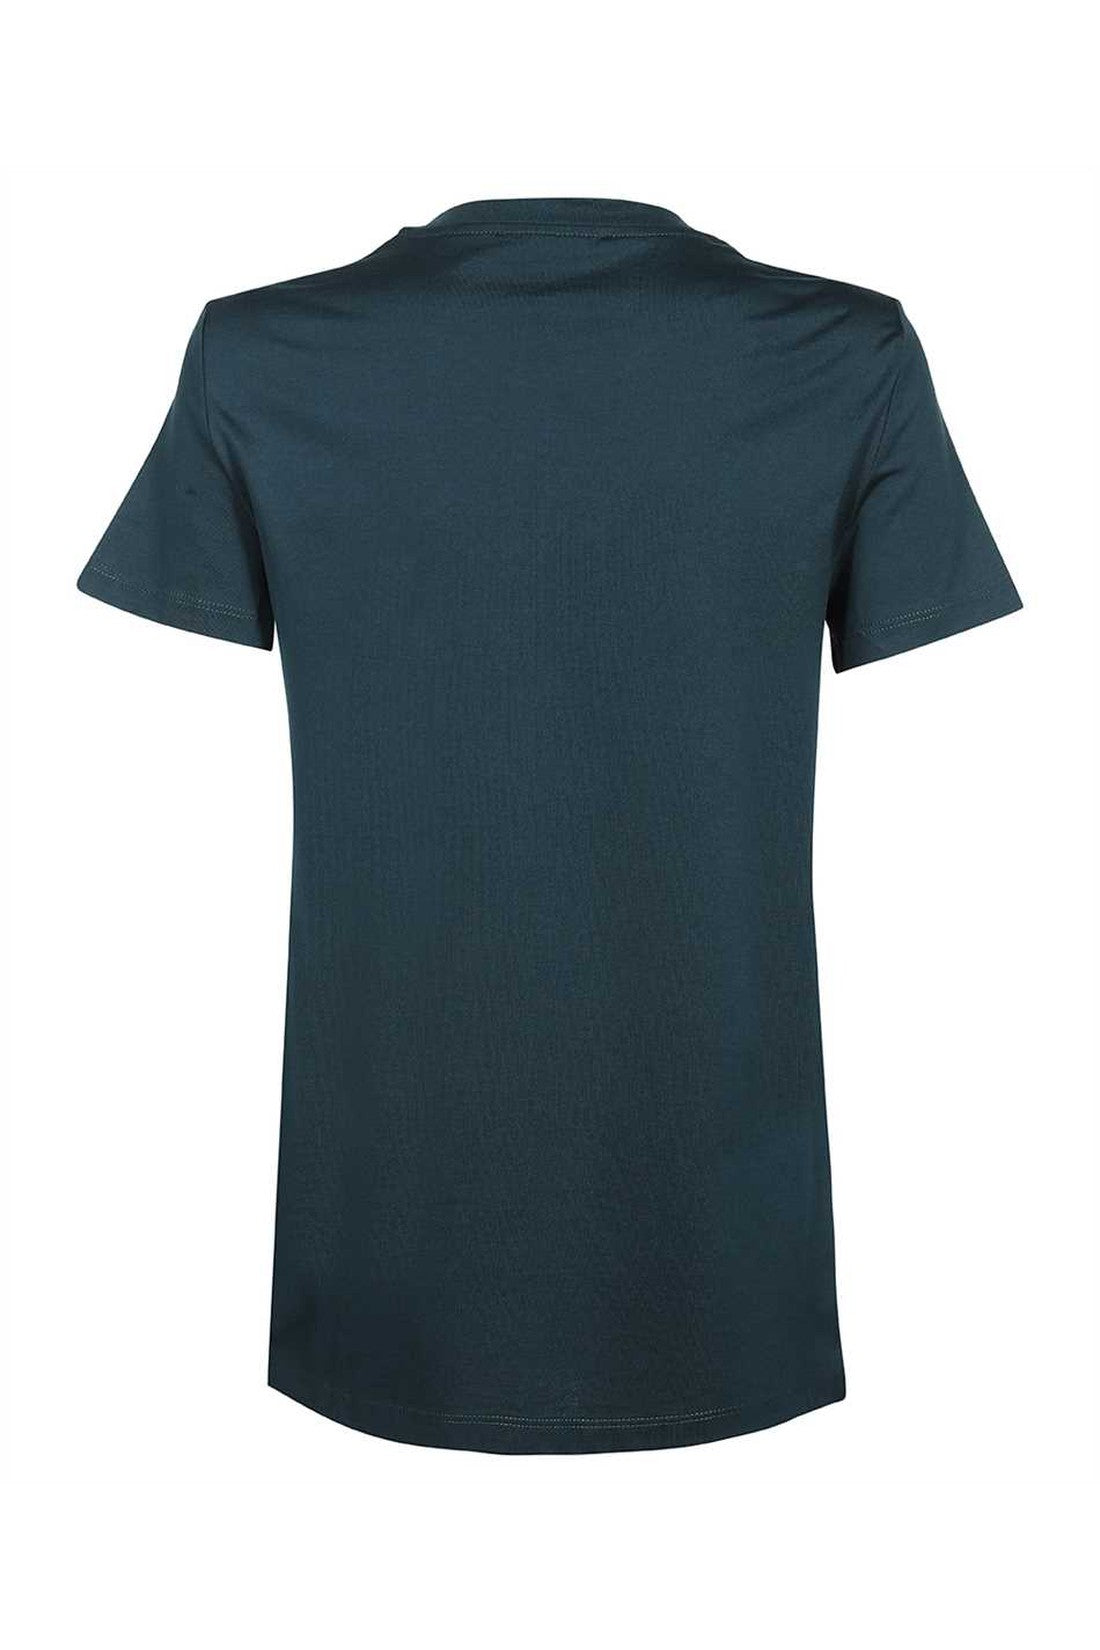 Max Mara-OUTLET-SALE-Agro cotton crew-neck T-shirt-ARCHIVIST